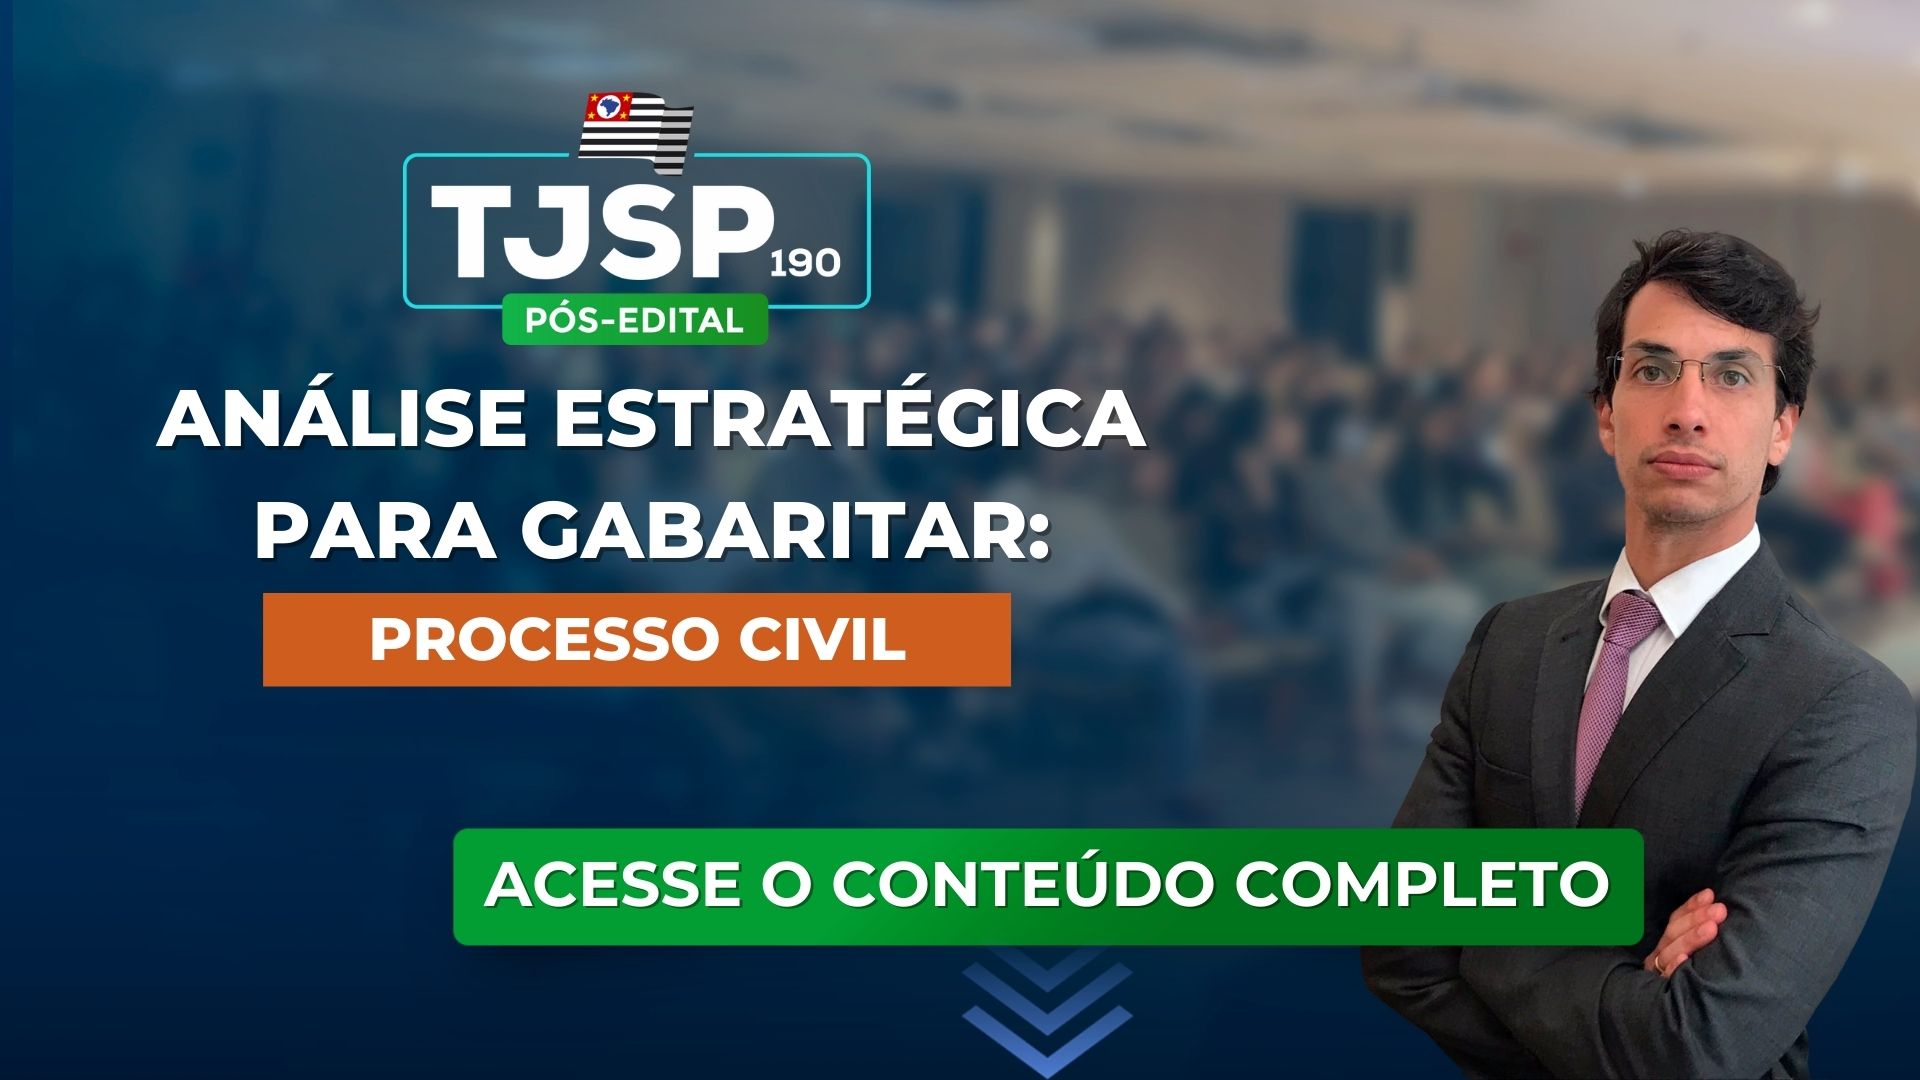 TJSP 190: Análise estratégica para gabaritar Direito Processual Civil